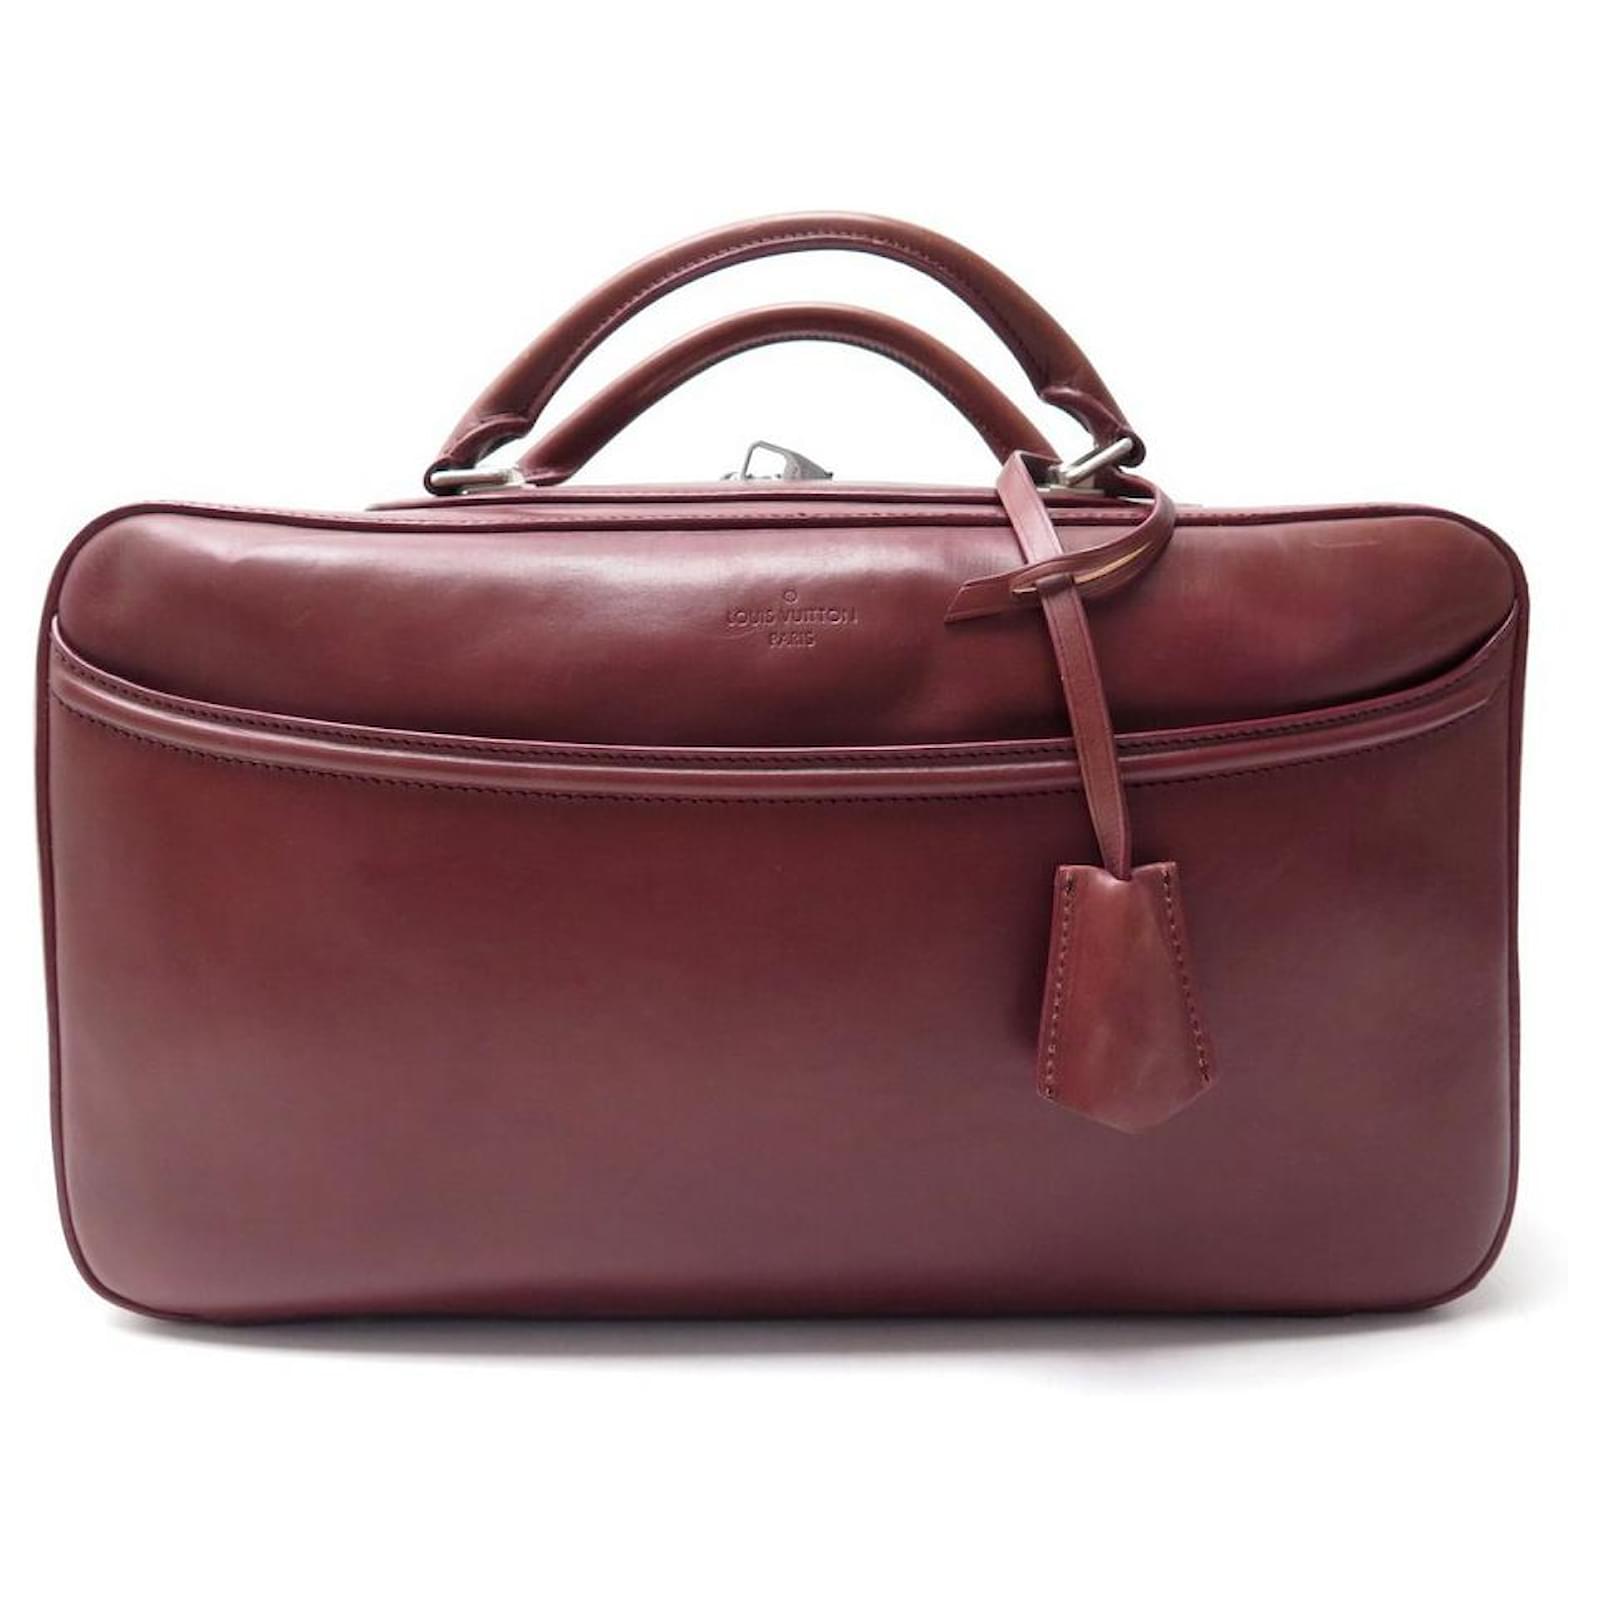 Louis Vuitton Taschen aus Leder - Braun - 31597993